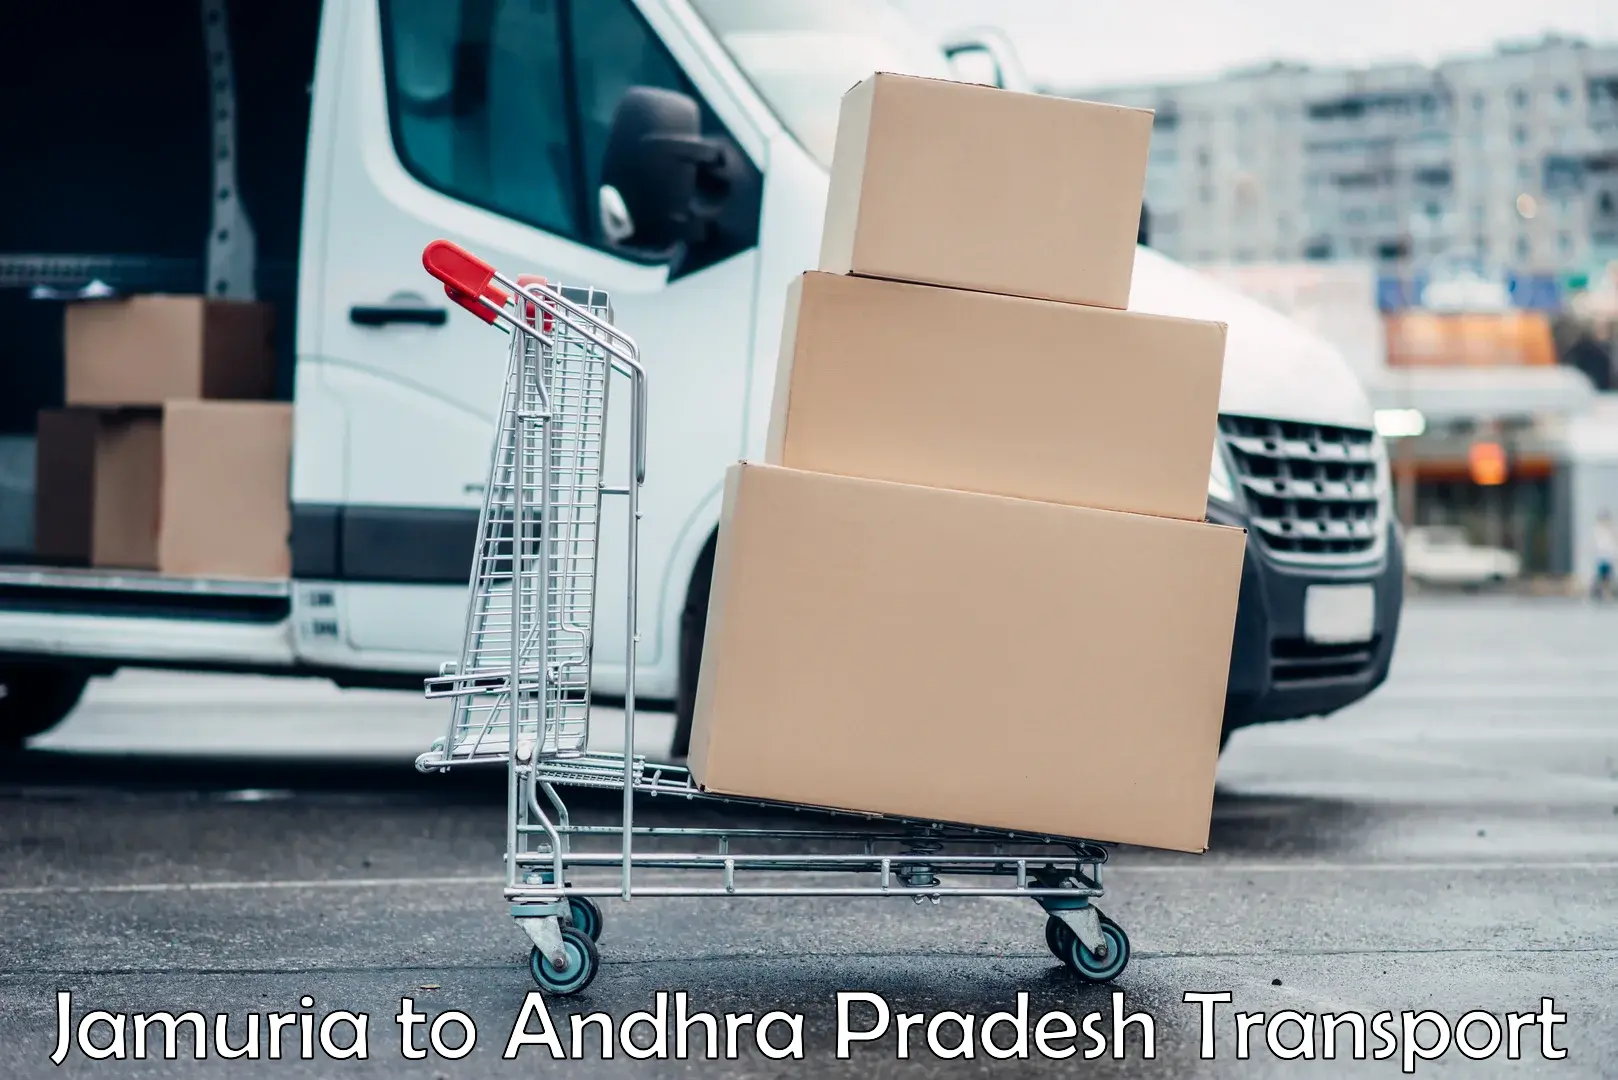 Furniture transport service Jamuria to Nellore